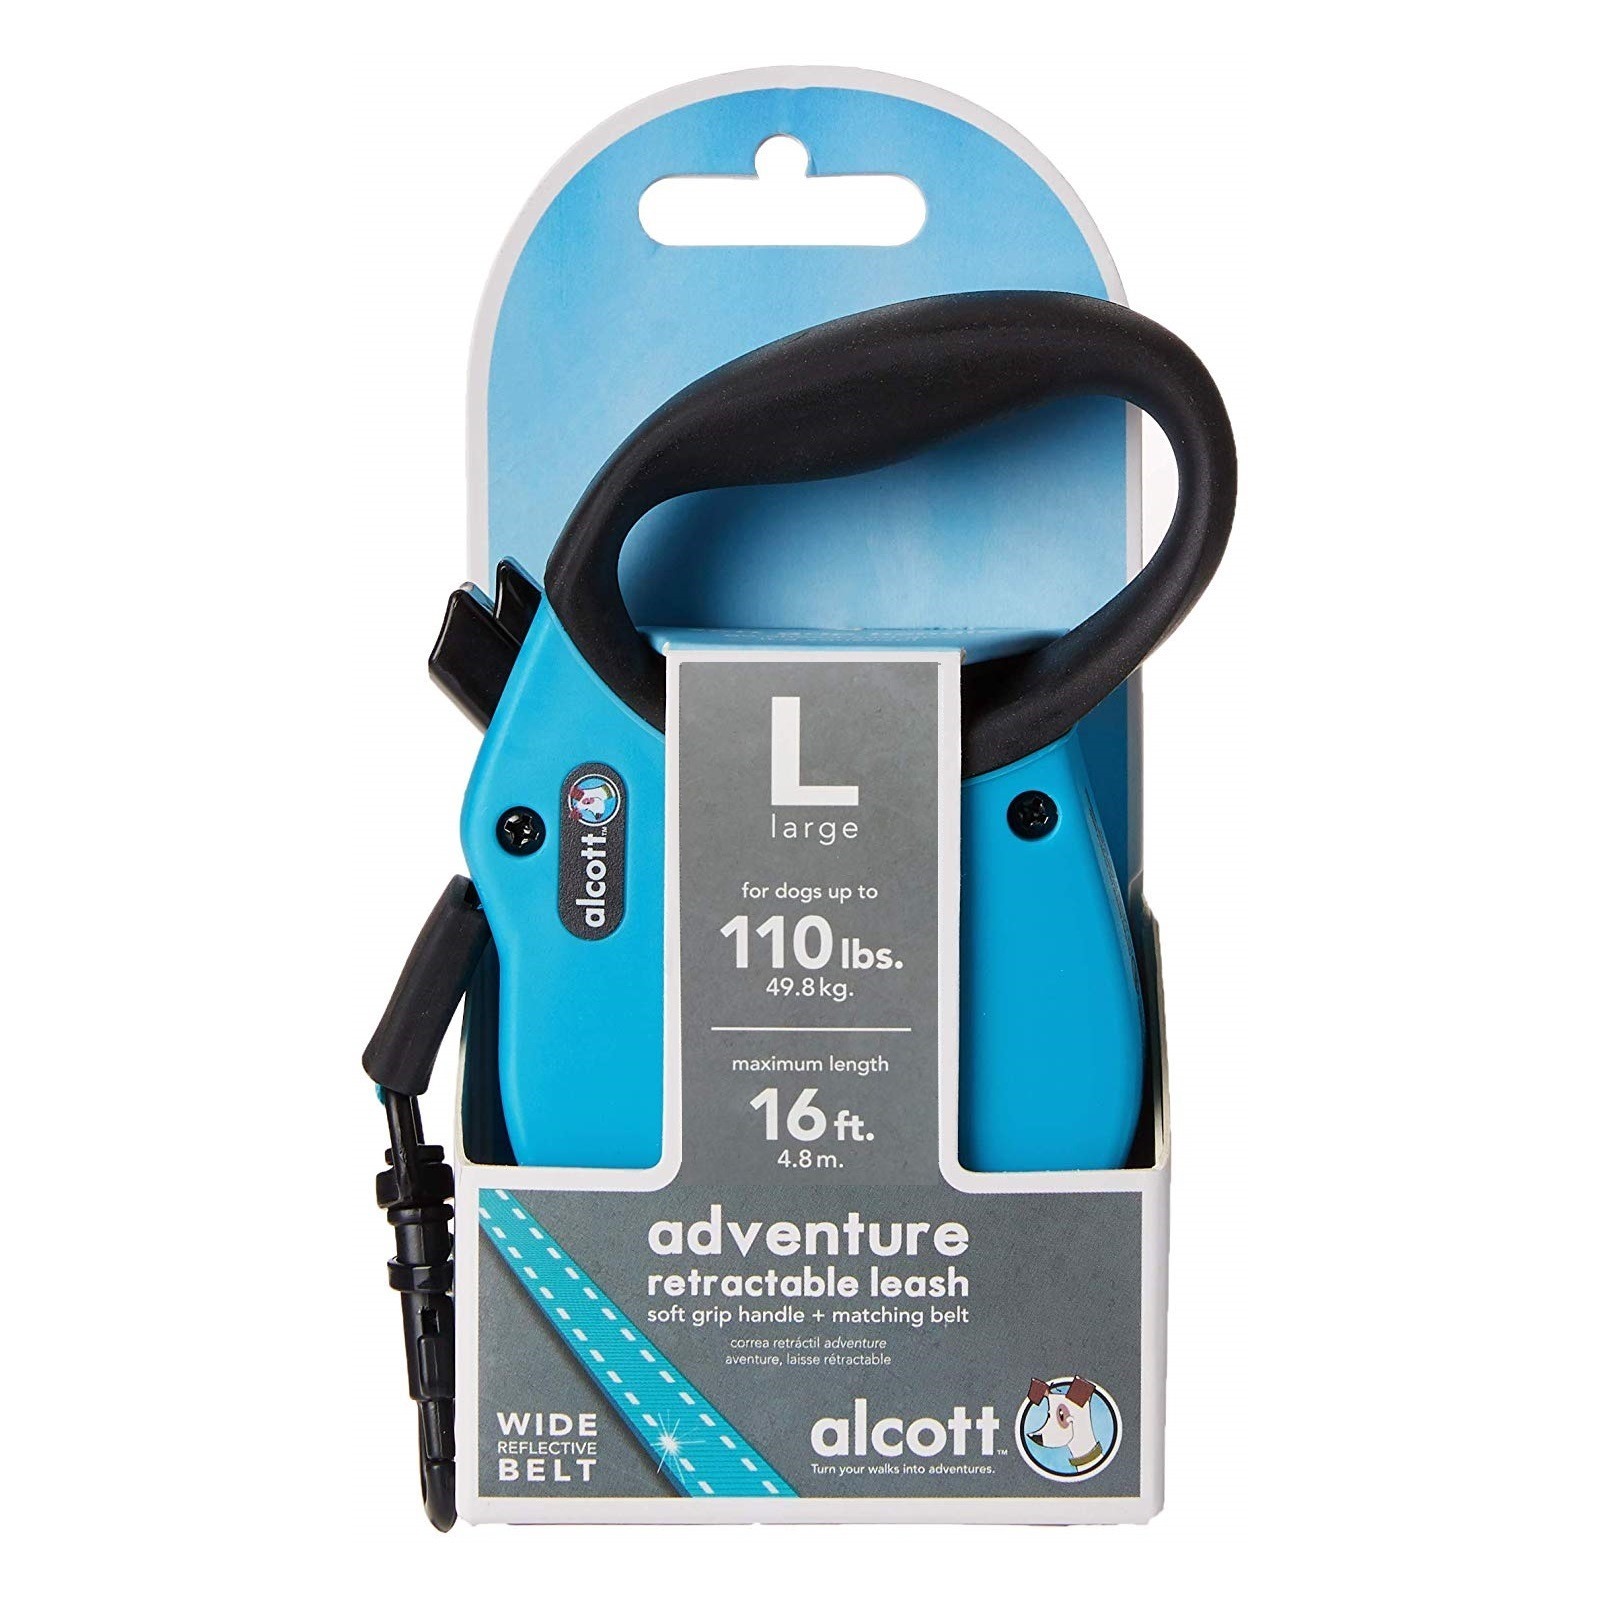 Alcott Flexi-ble Adventure Retractable Tape Dog Leash - Blue image 4